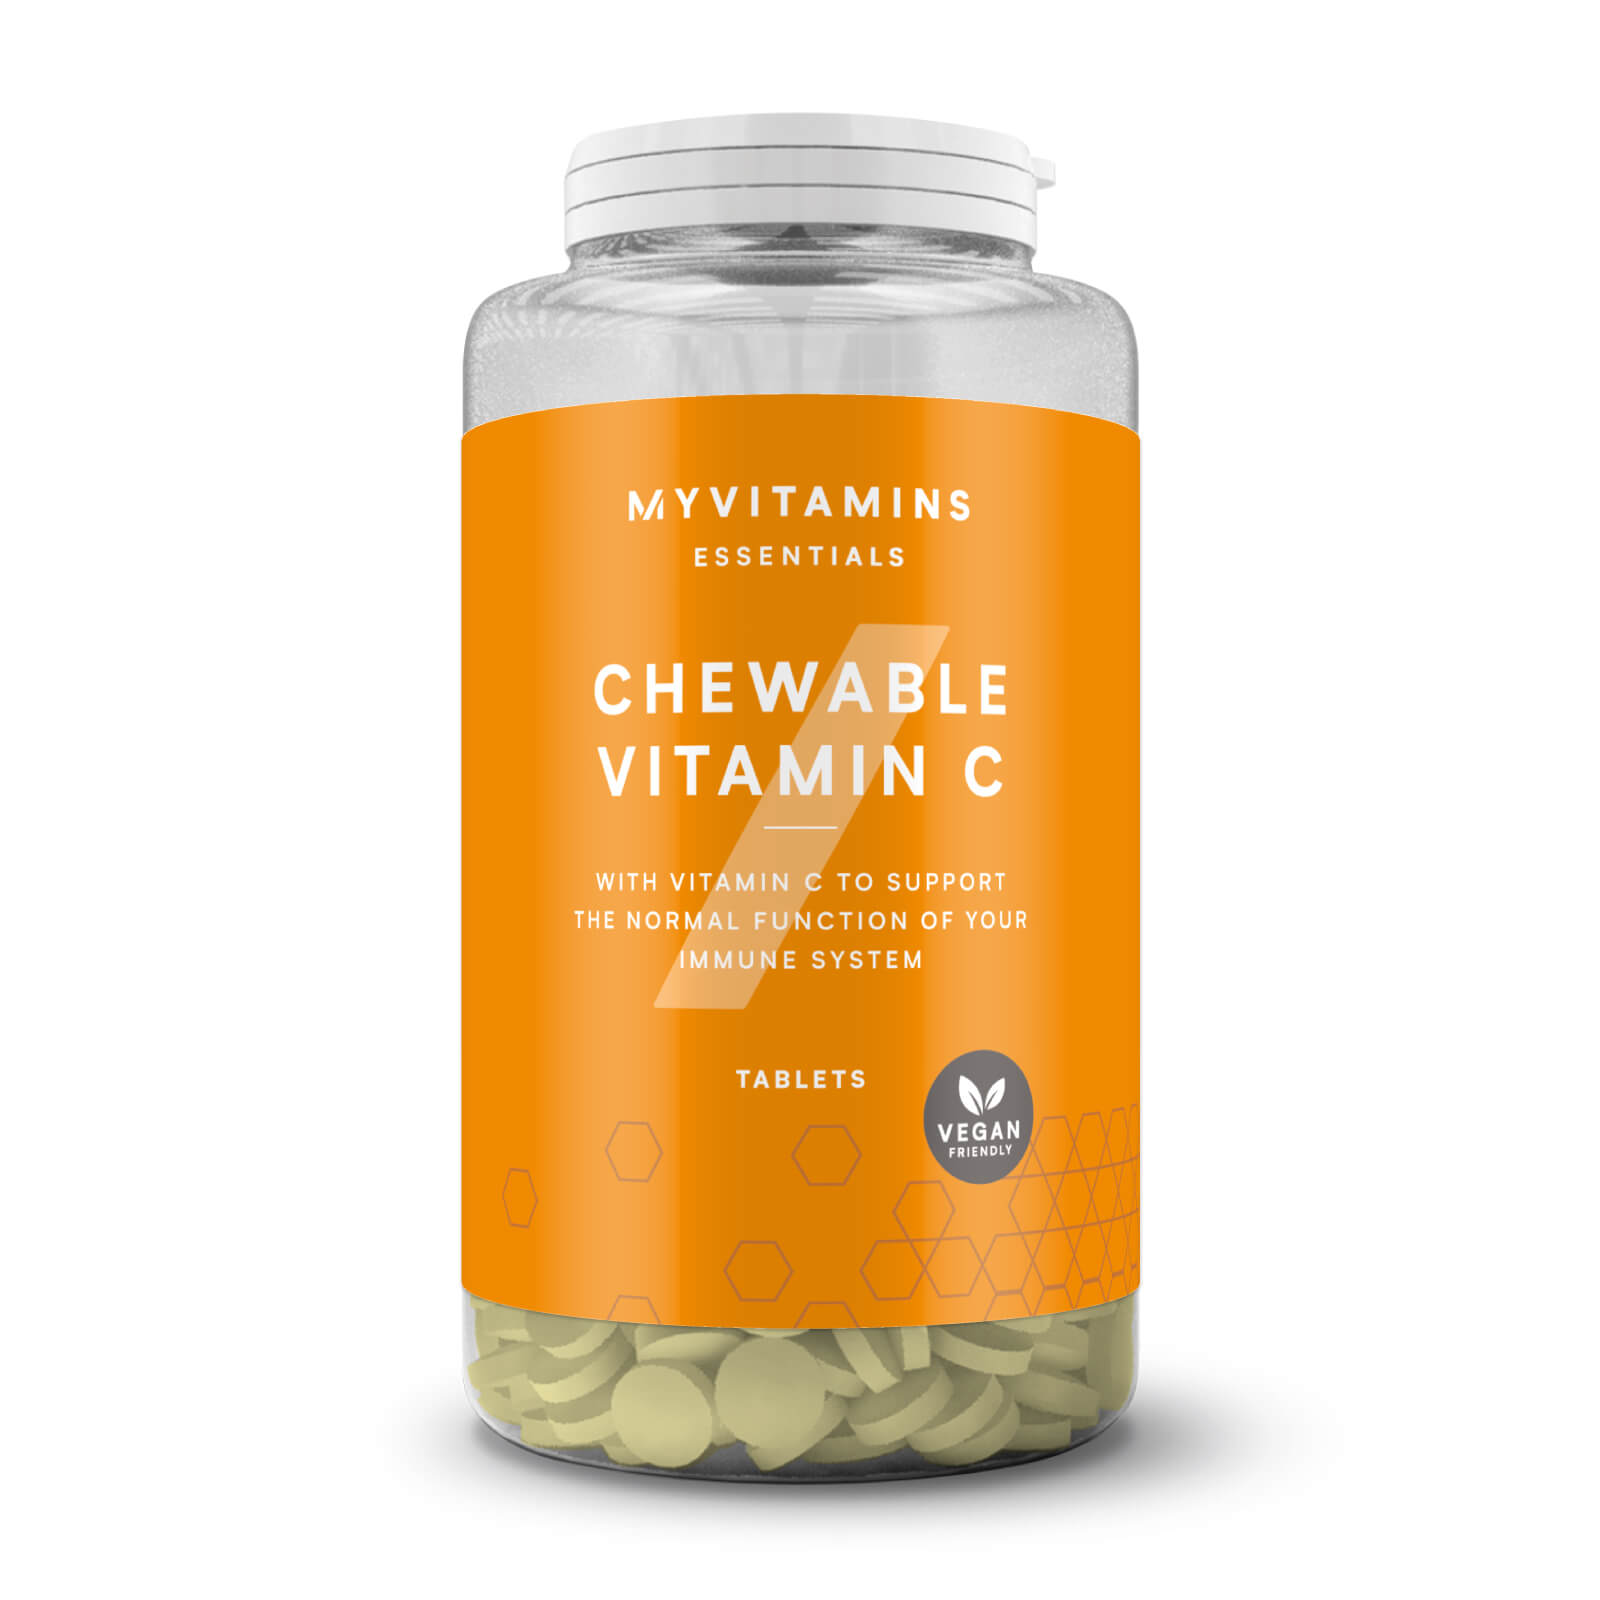 Žvakaći Vitamin C - 60tablets